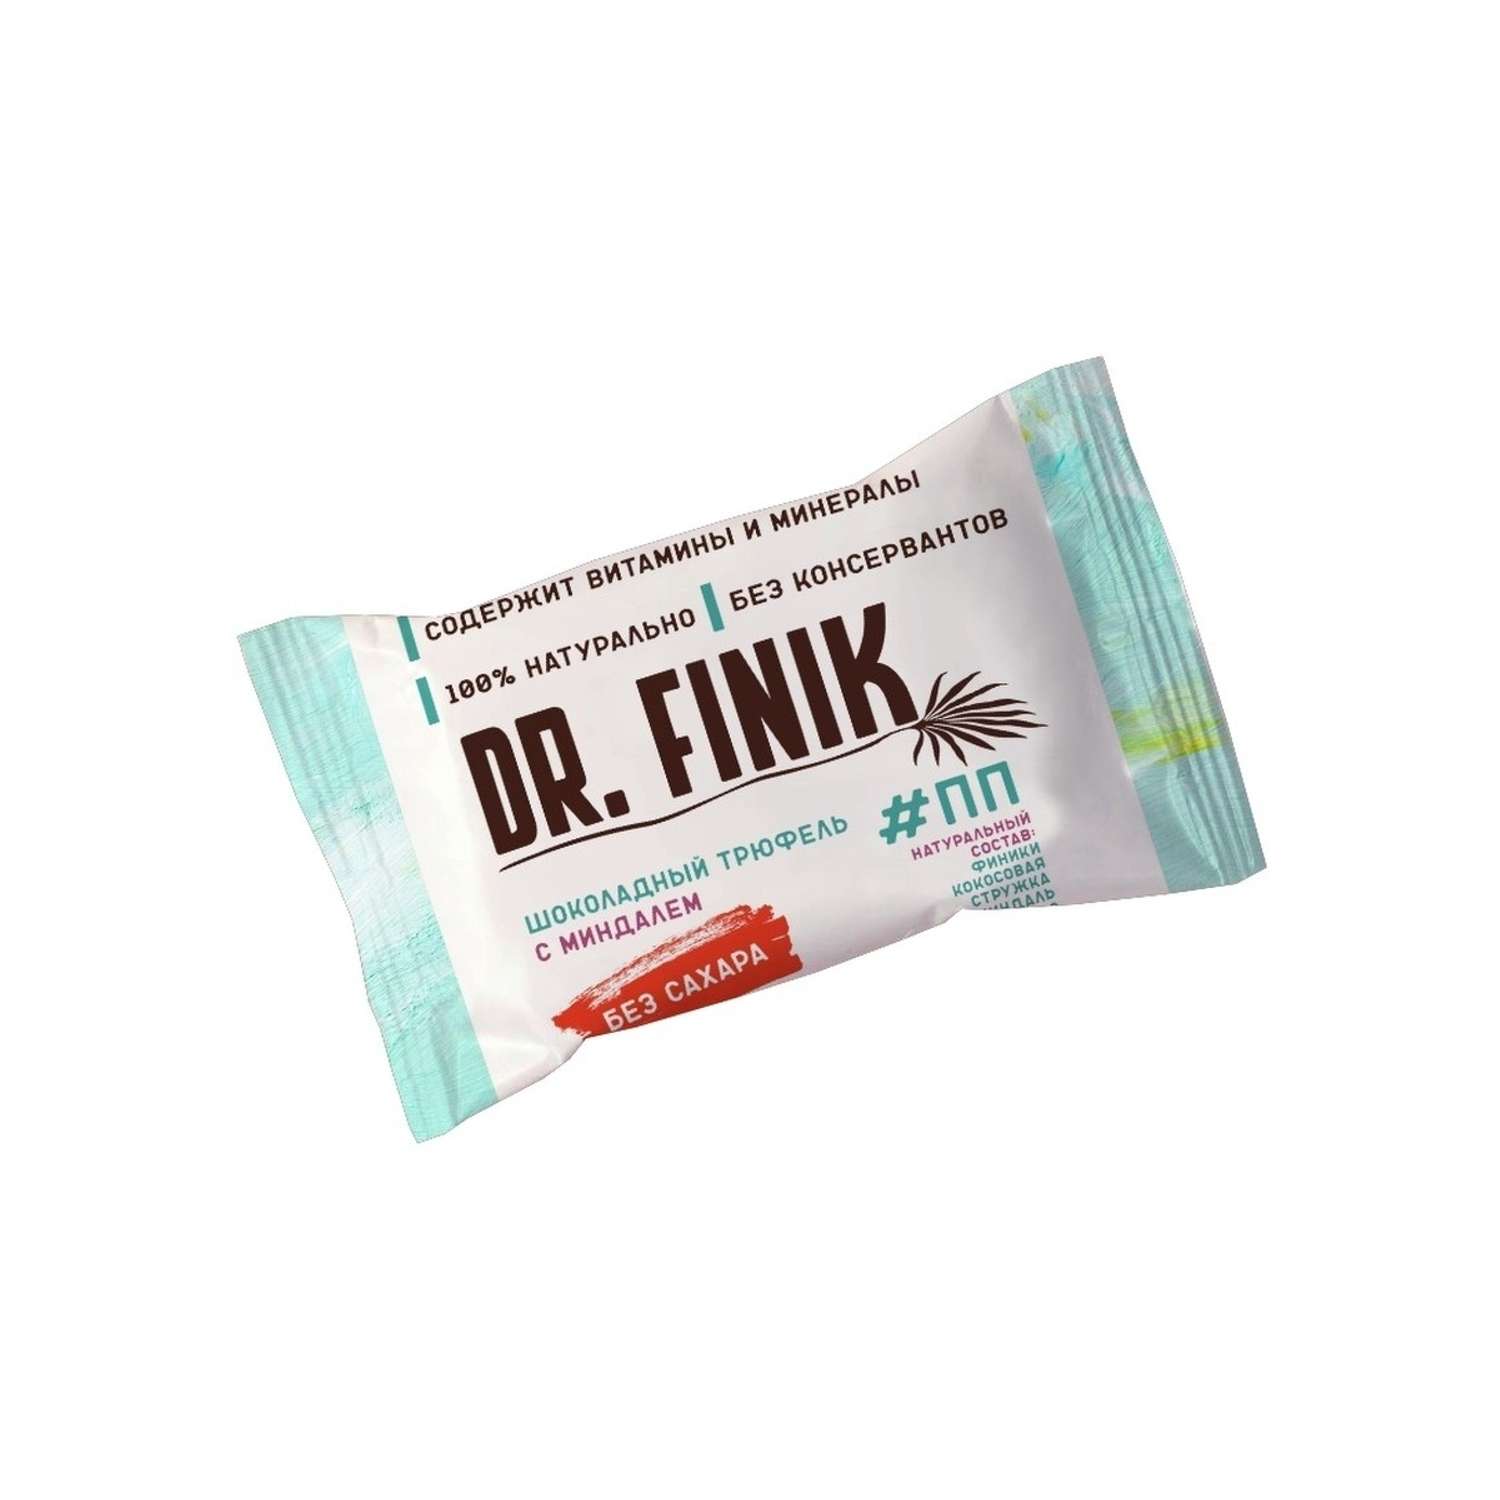 Полезные конфеты из фиников Dr.Finik Шоколадный трюфель с миндалем 150 г - 2 упаковки без сахара - фото 2